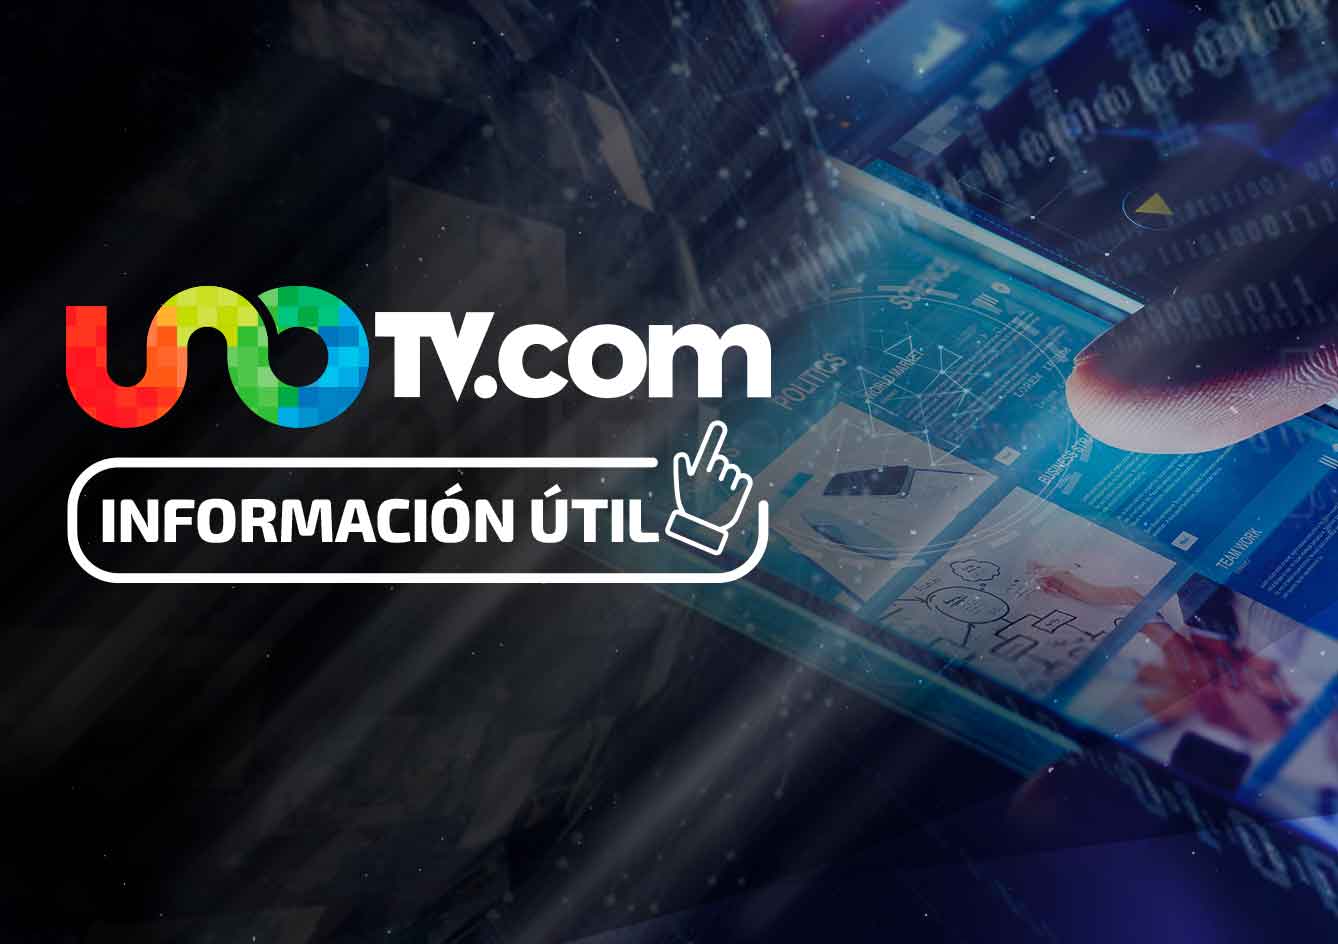 92.2% de los mexicanos tendrá acceso a internet: SCT